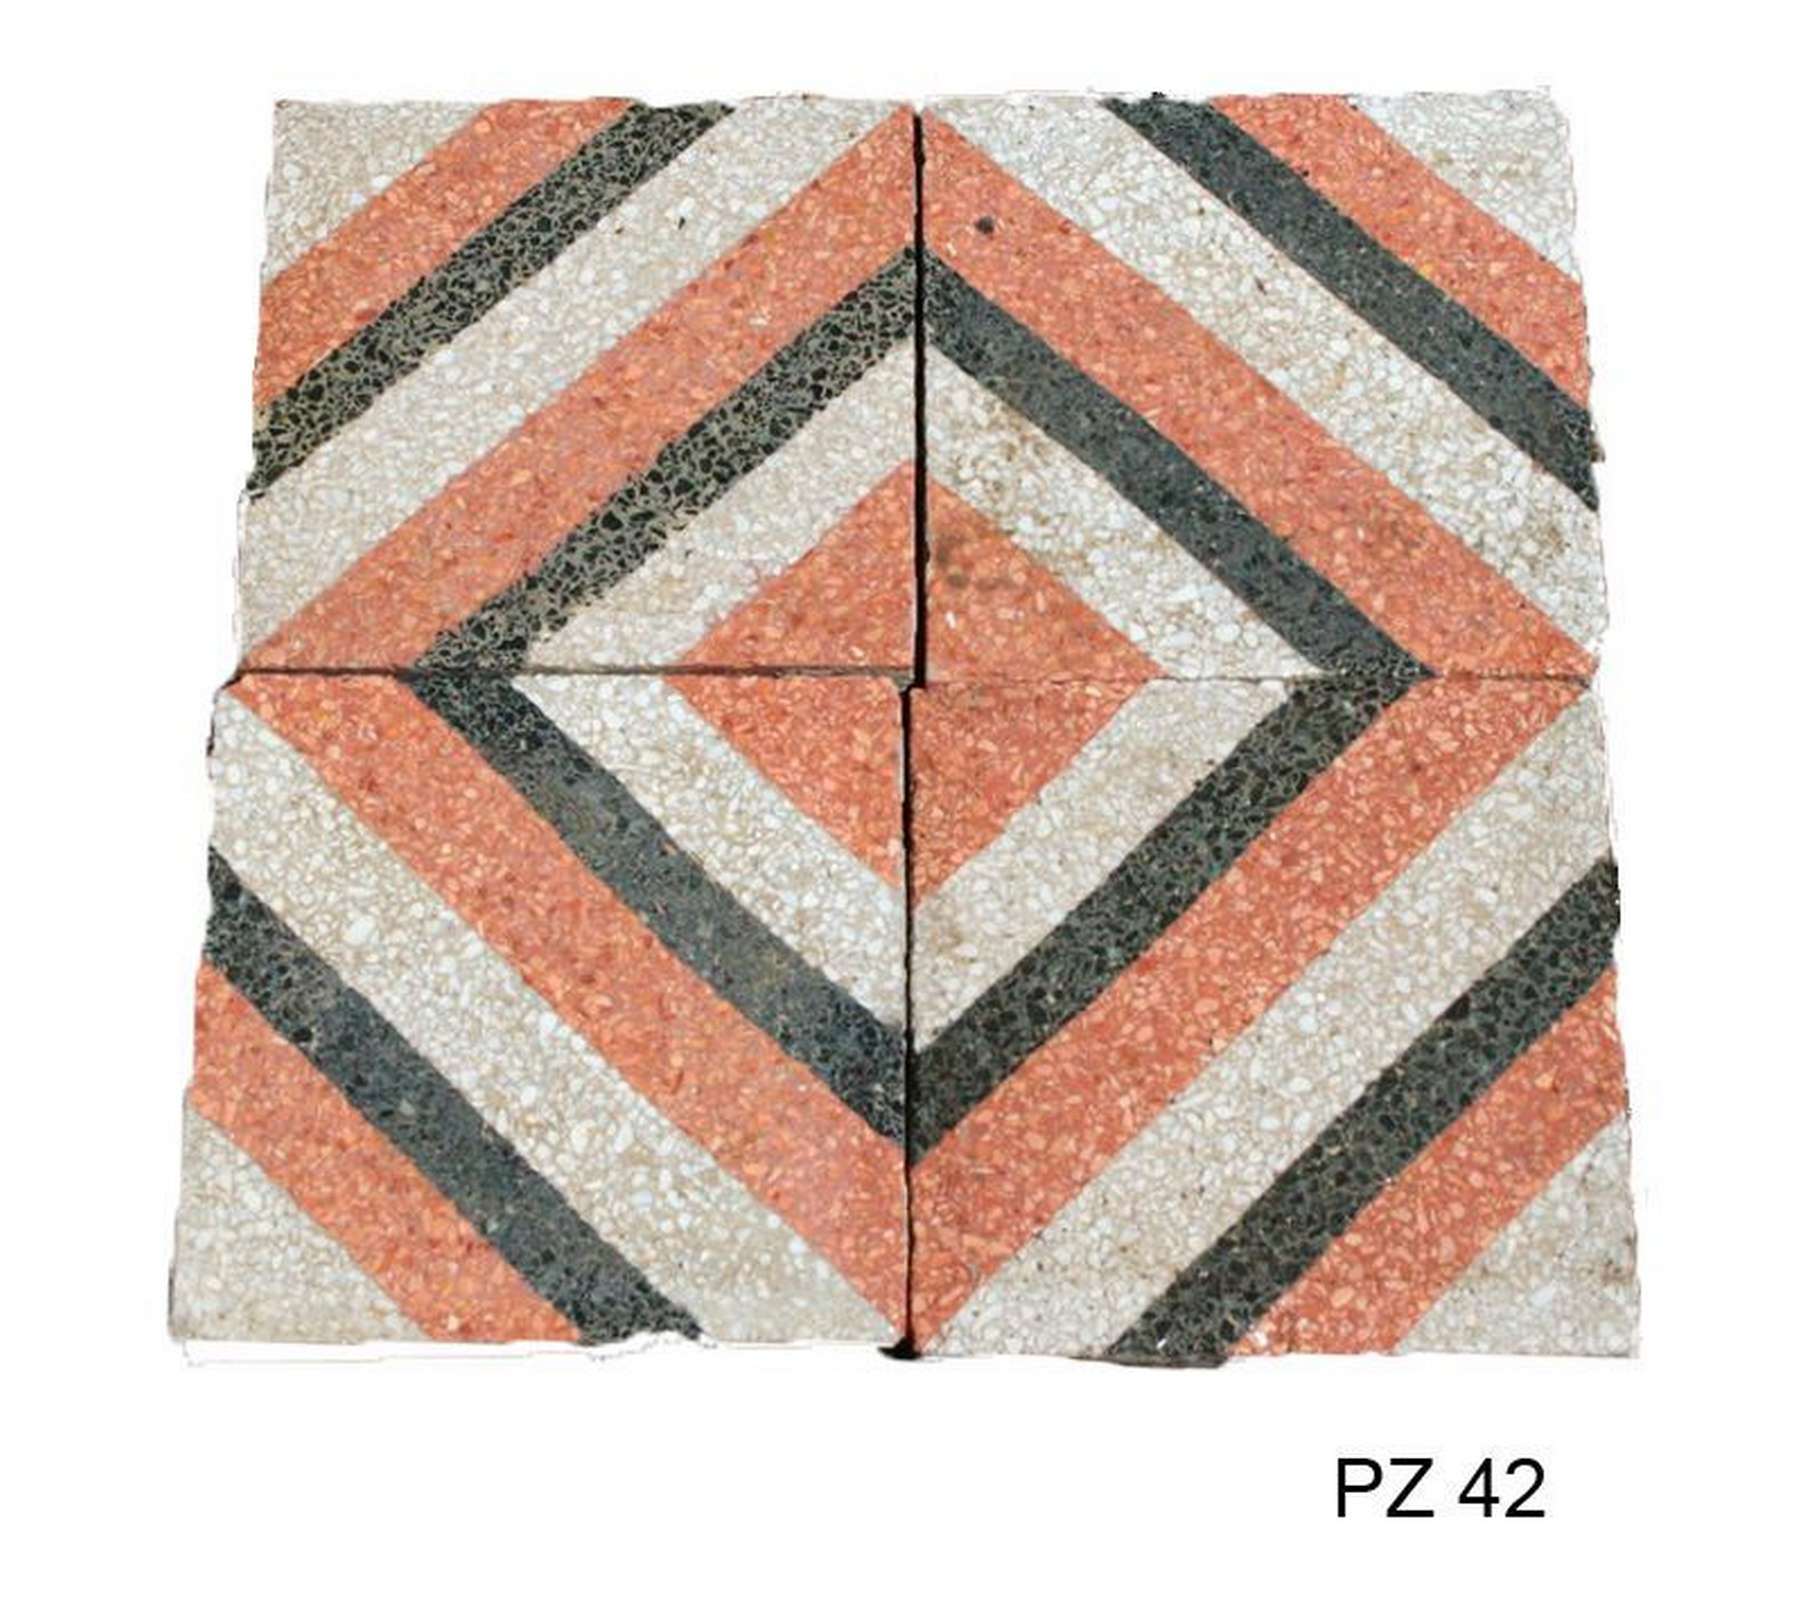 Antica pavimentazione in graniglia cm 20x20 - Cementine e Graniglie - Pavimentazioni Antiche - Prodotti - Antichità Fiorillo